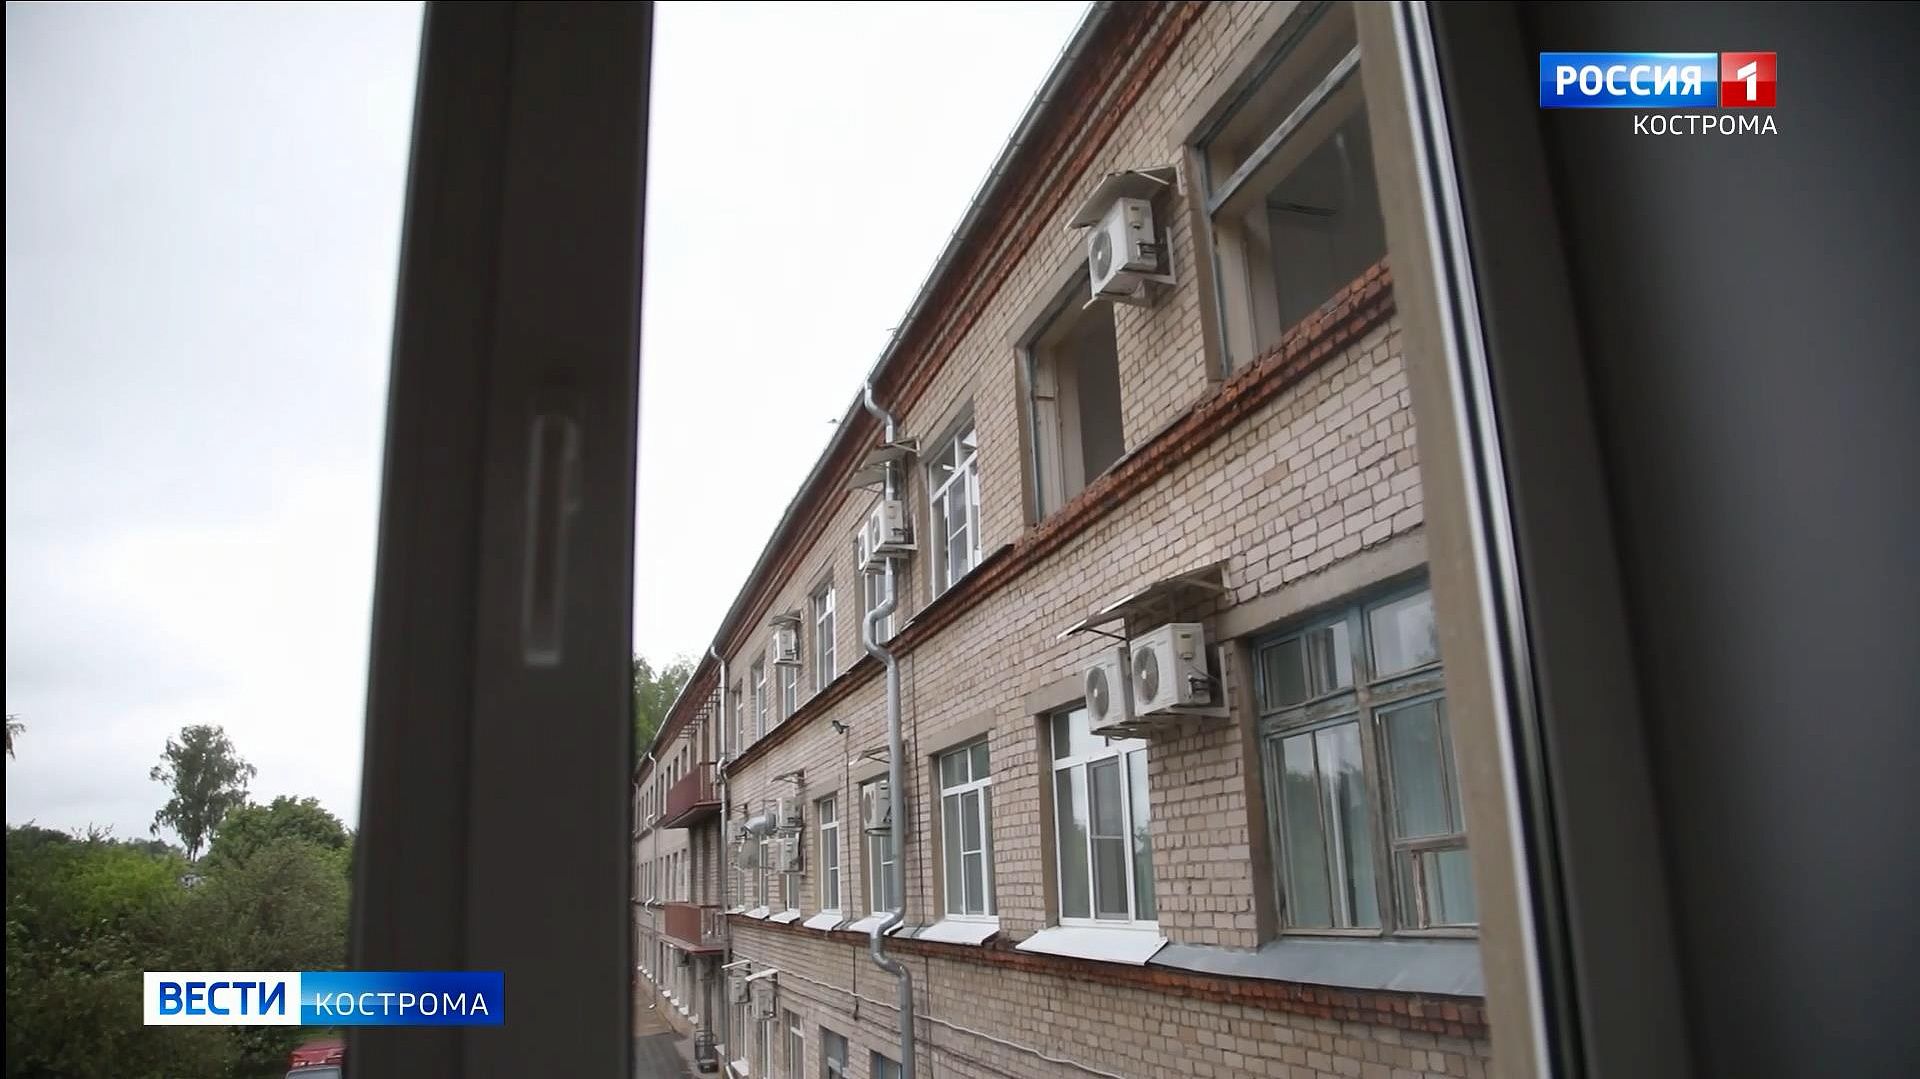 Отделение для новорождённых в Костроме ждут большие перемены 